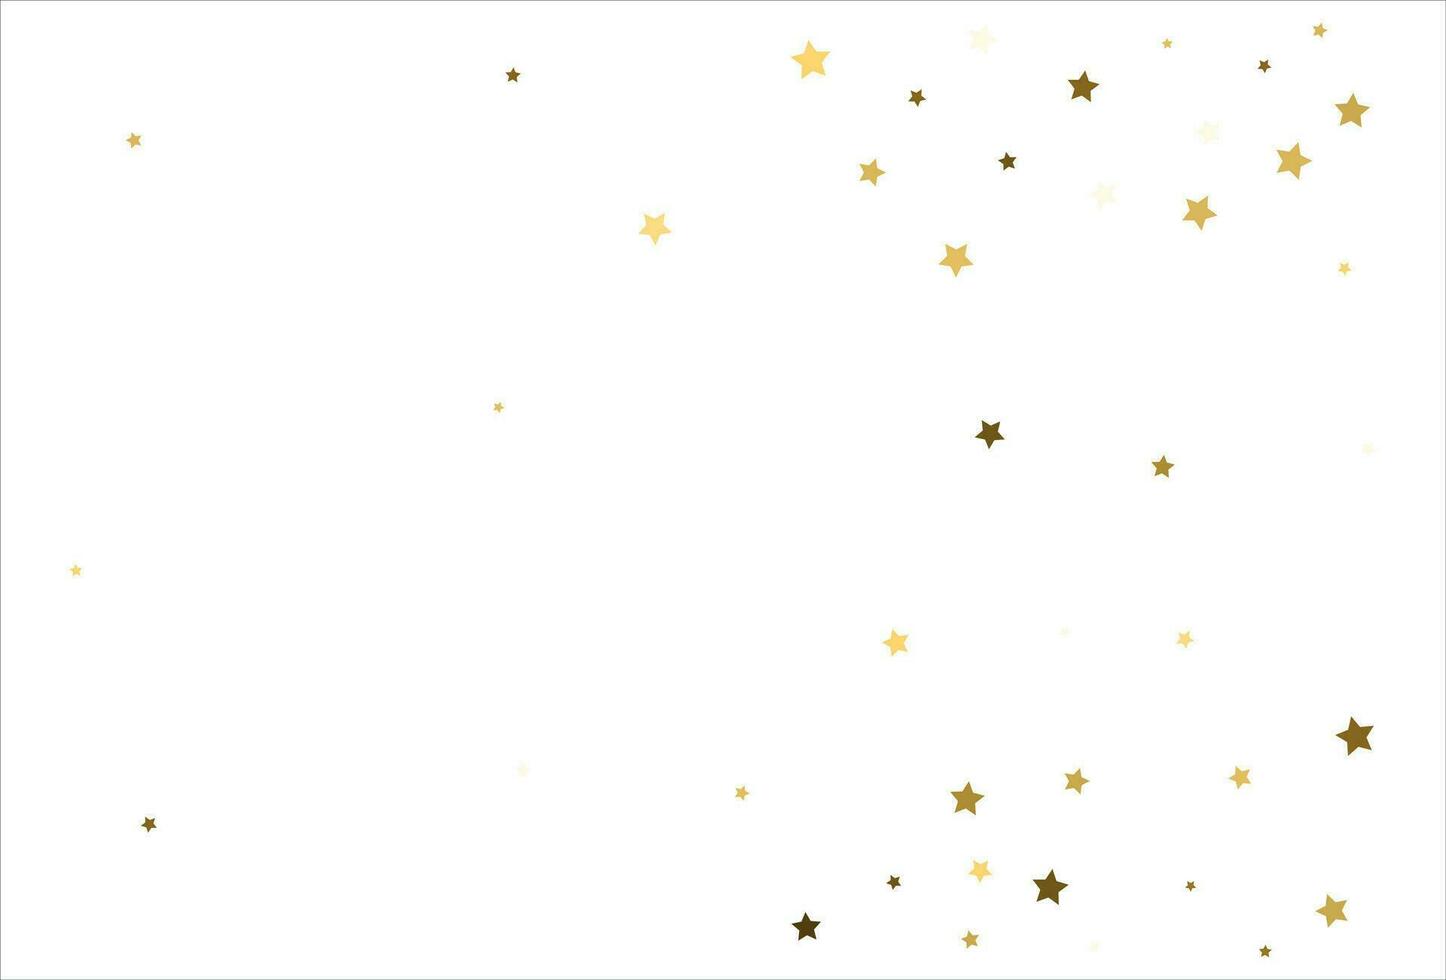 slumpmässig faller guld stjärnor på vit bakgrund. glitter mönster för baner, hälsning kort, jul och ny år kort, inbjudan, vykort, papper förpackning vektor